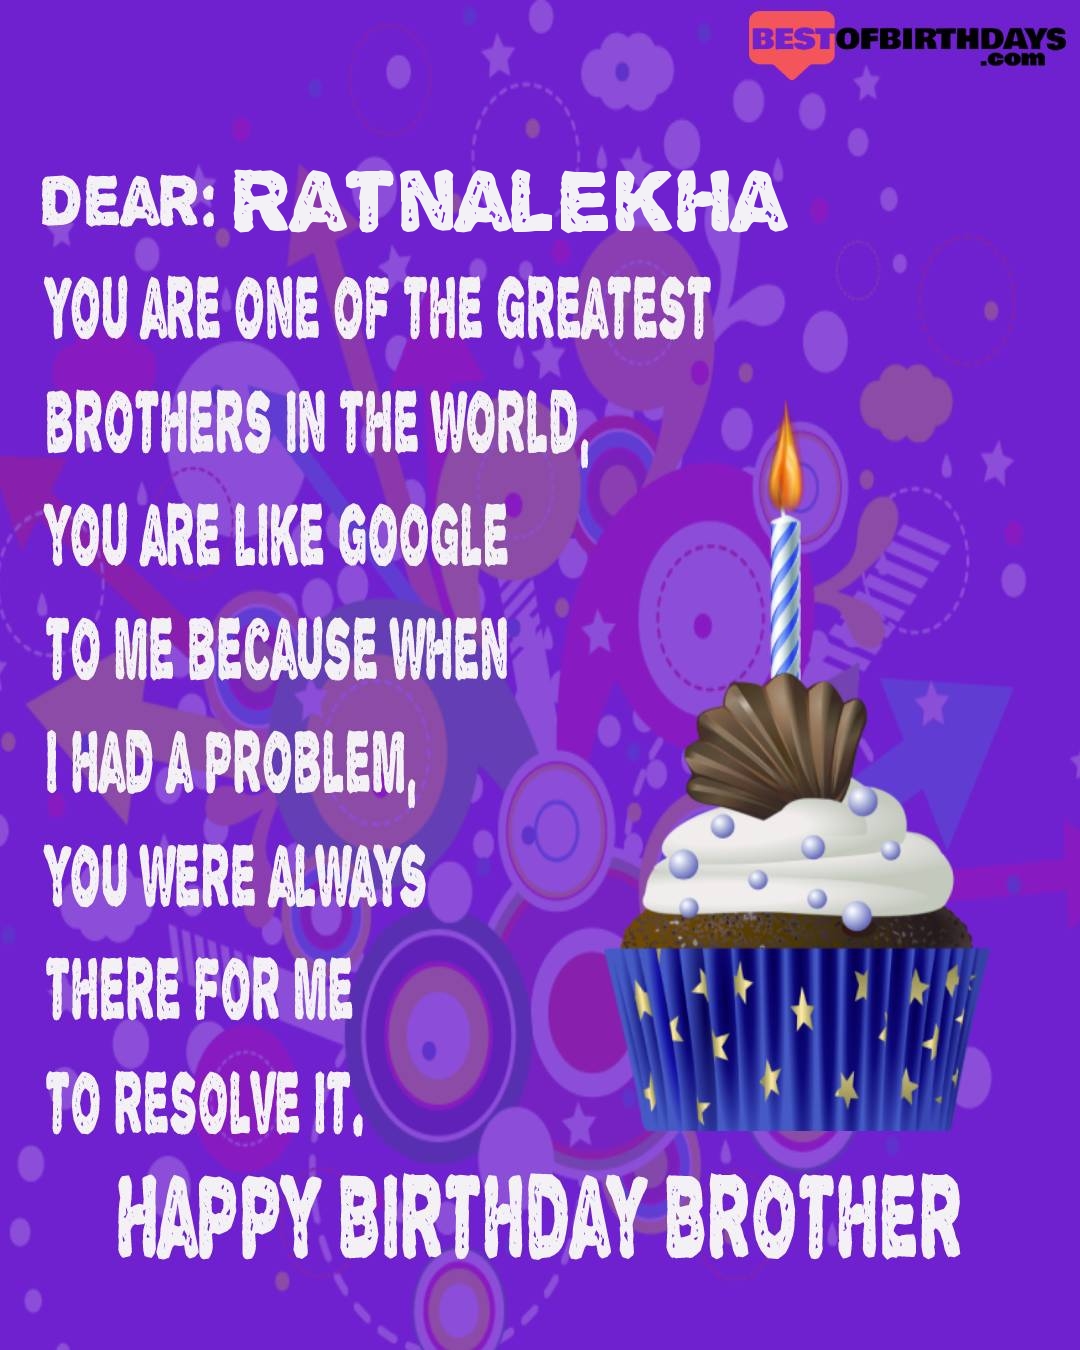 Happy birthday ratnalekha bhai brother bro